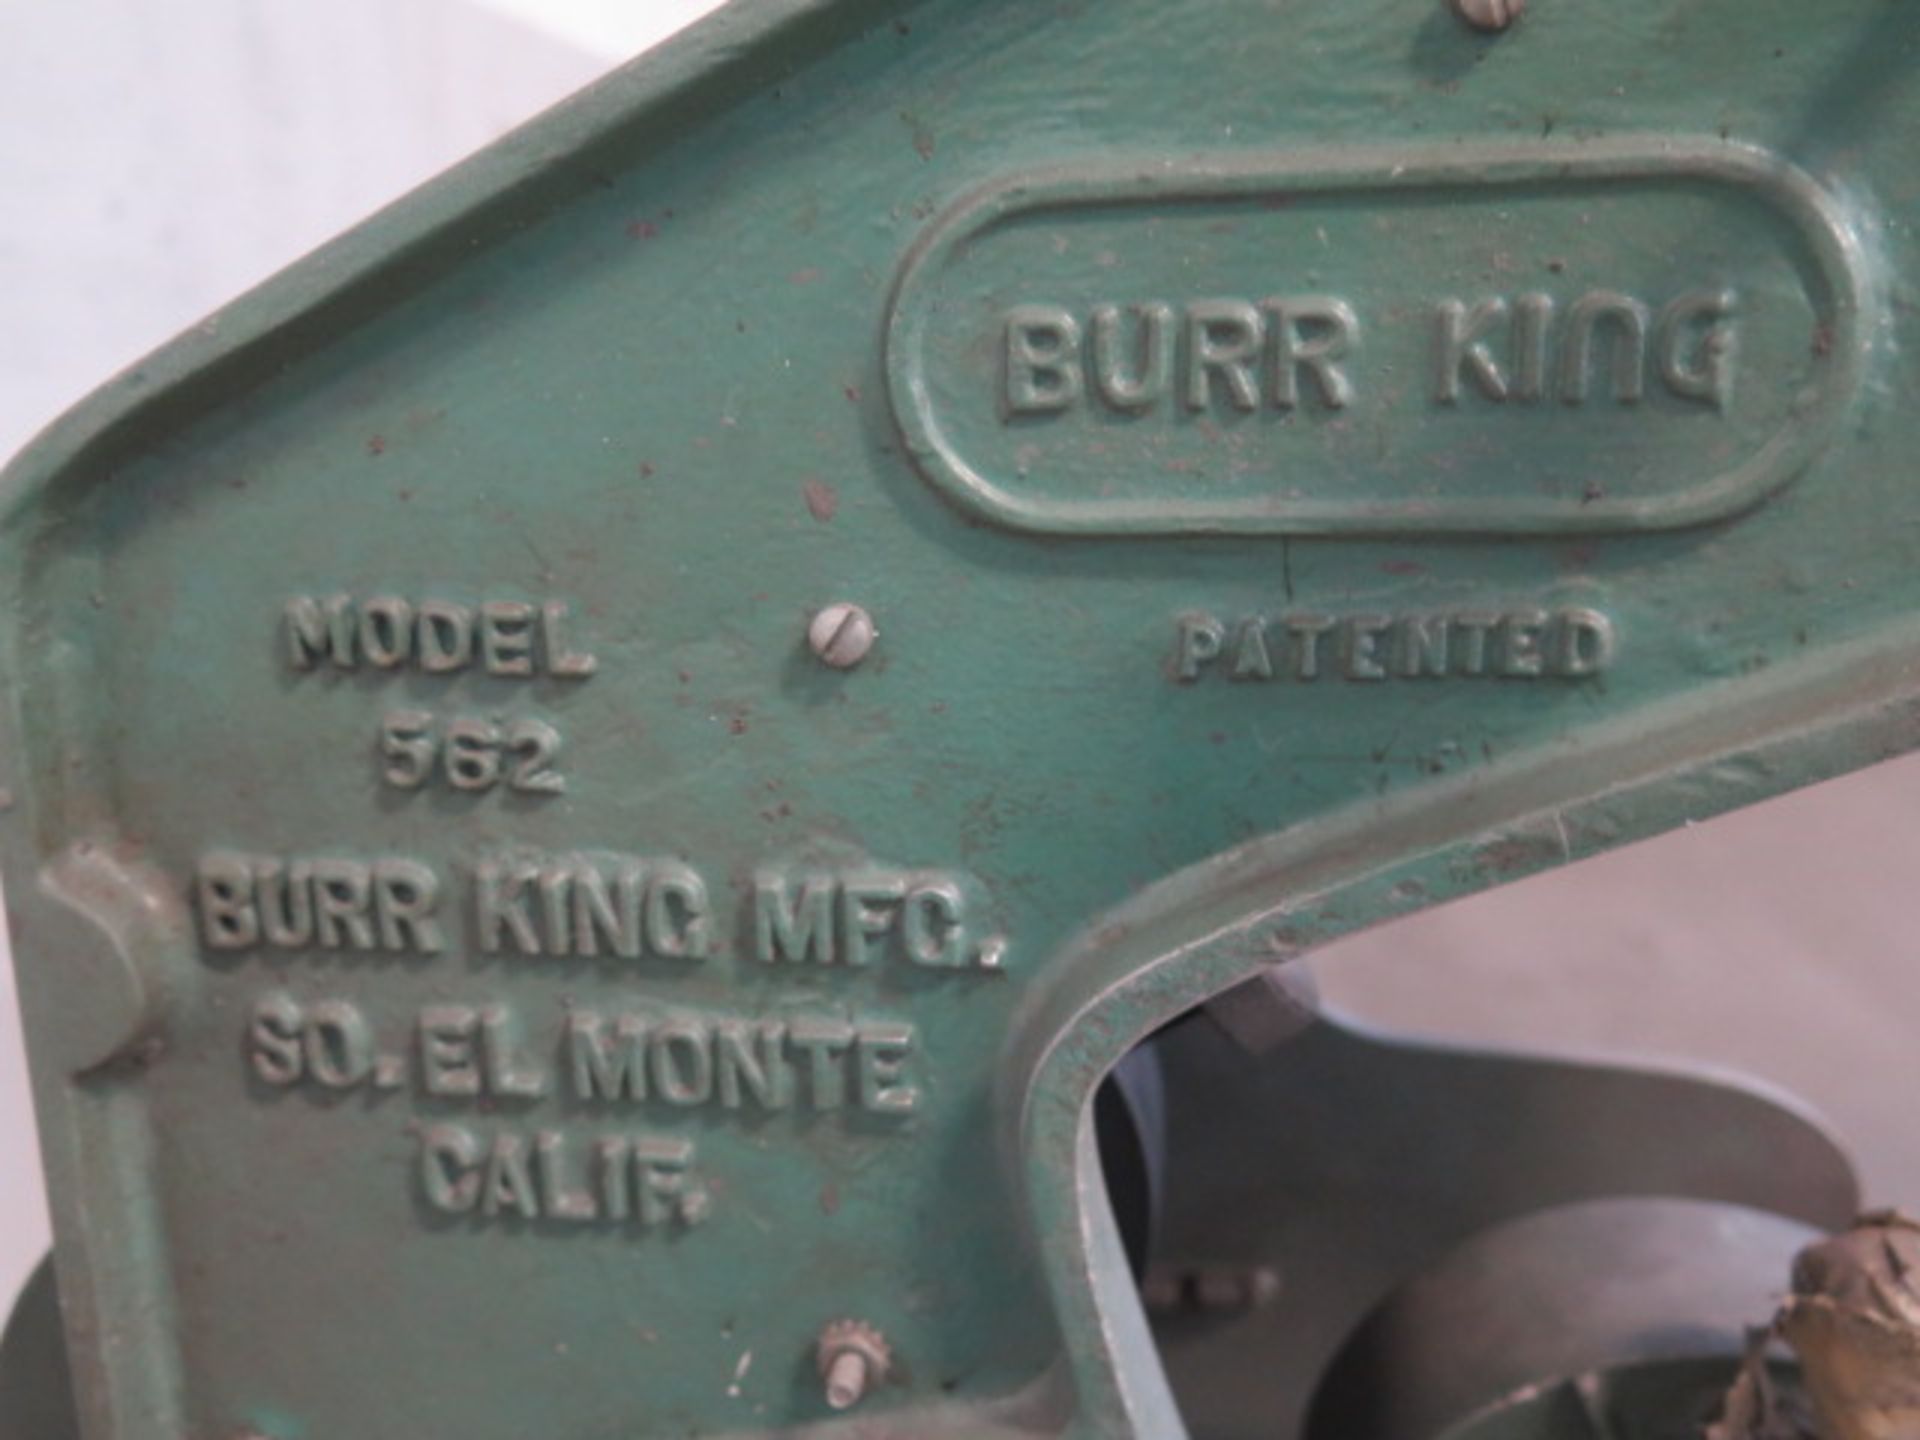 Burr King mdl. 562 1” Pedestal Belt Sander (SOLD AS-IS - NO WARRANTY) - Image 5 of 5